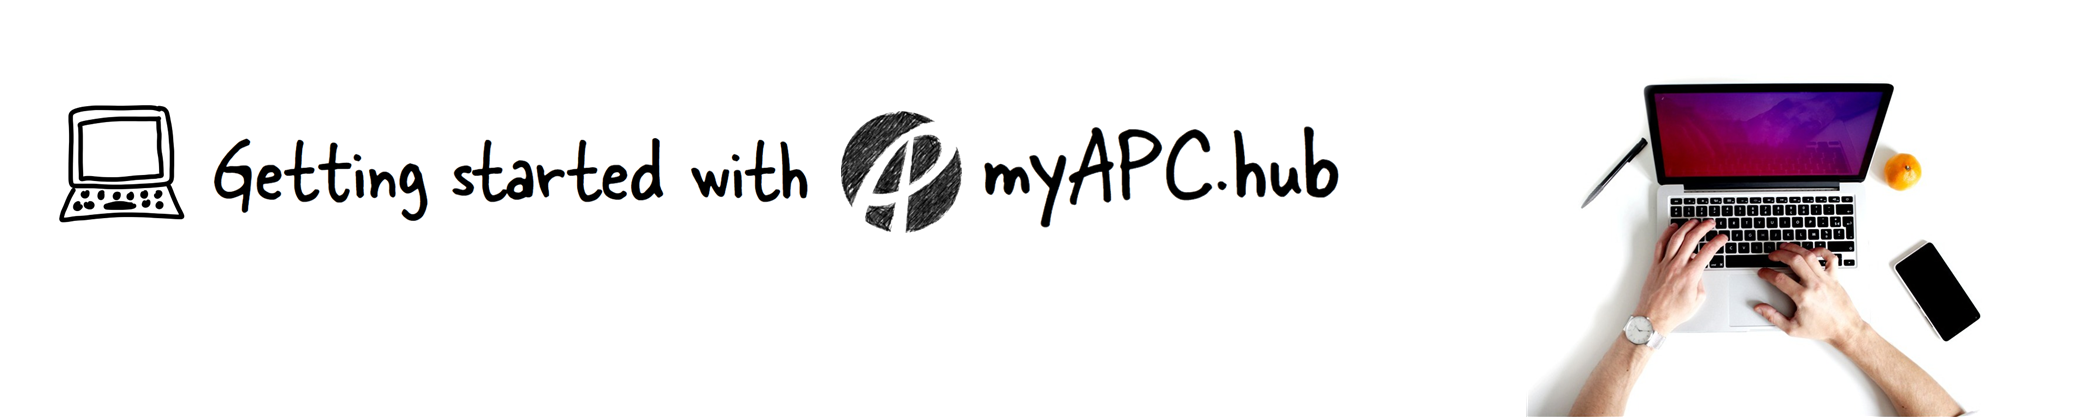 Getting Started with myAPC.hub